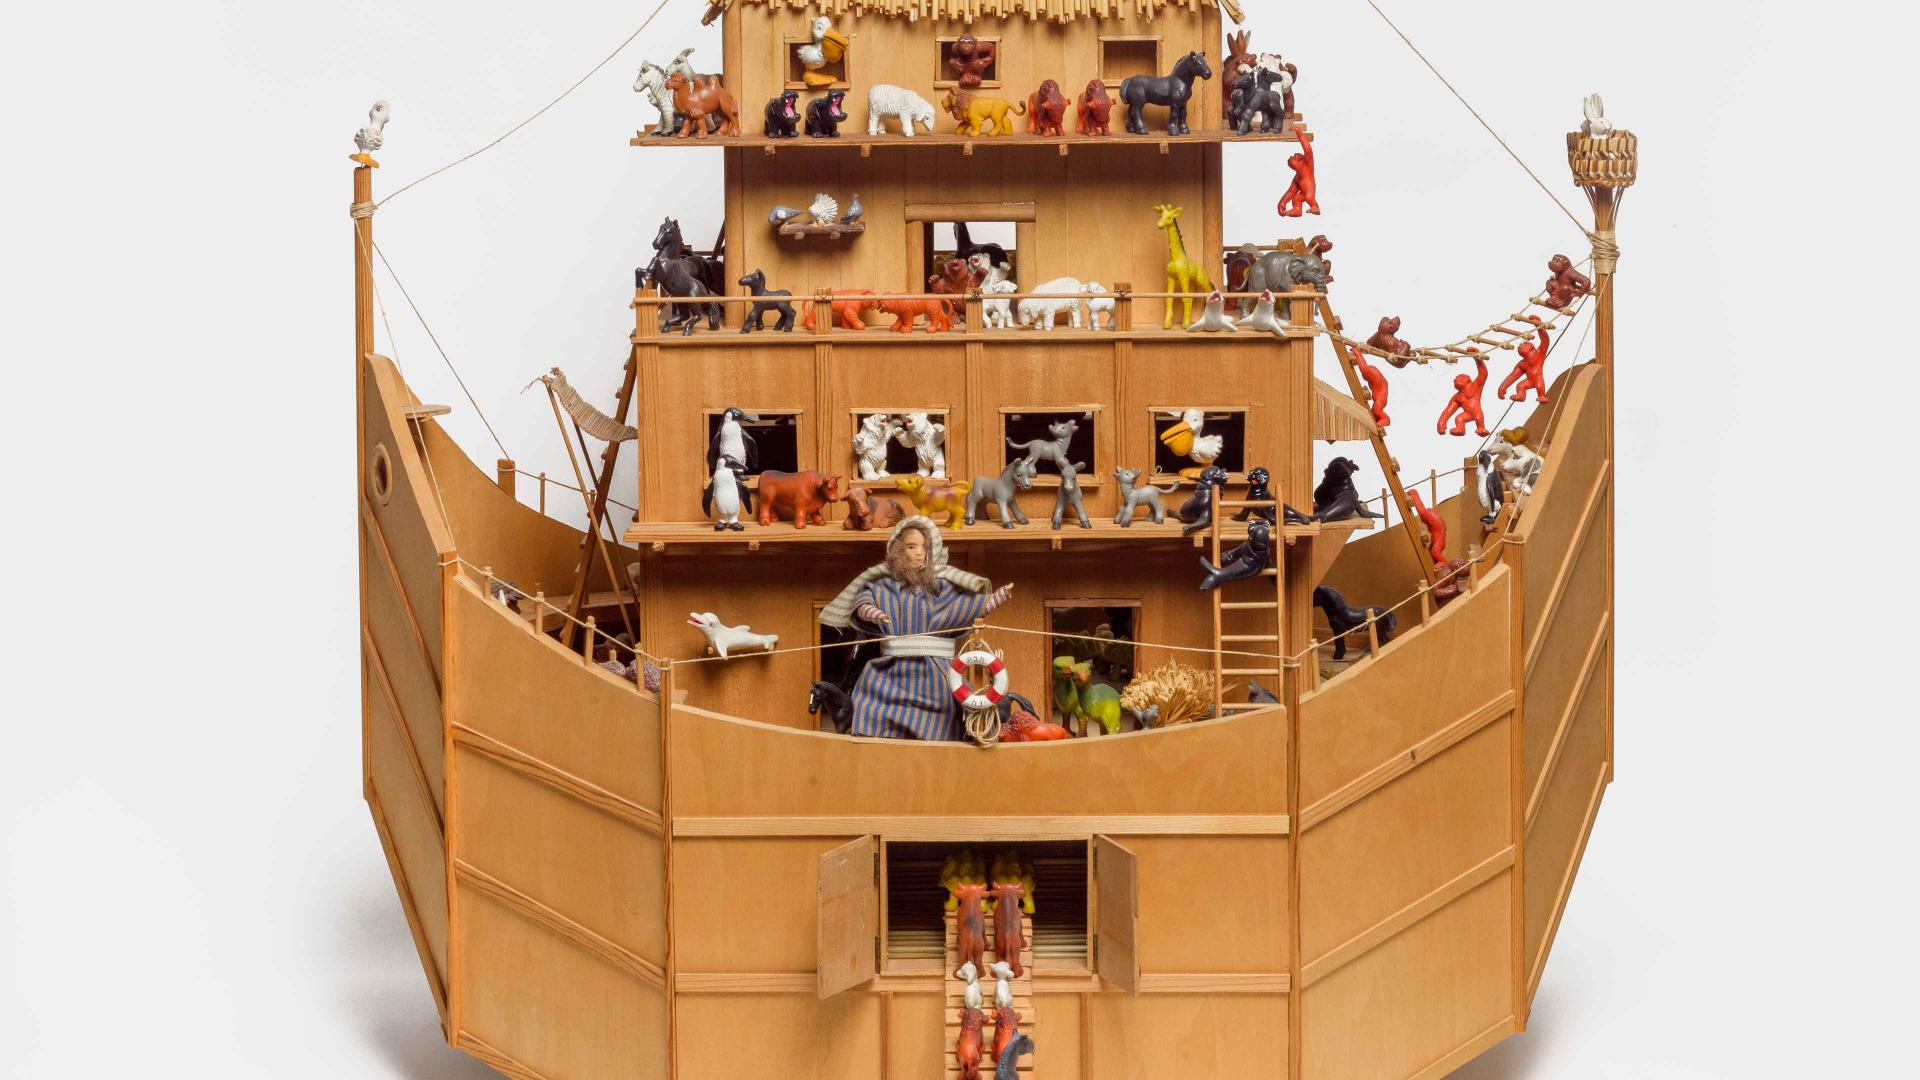 Ausschnitt einer Holzarche mit Spielzeugfiguren